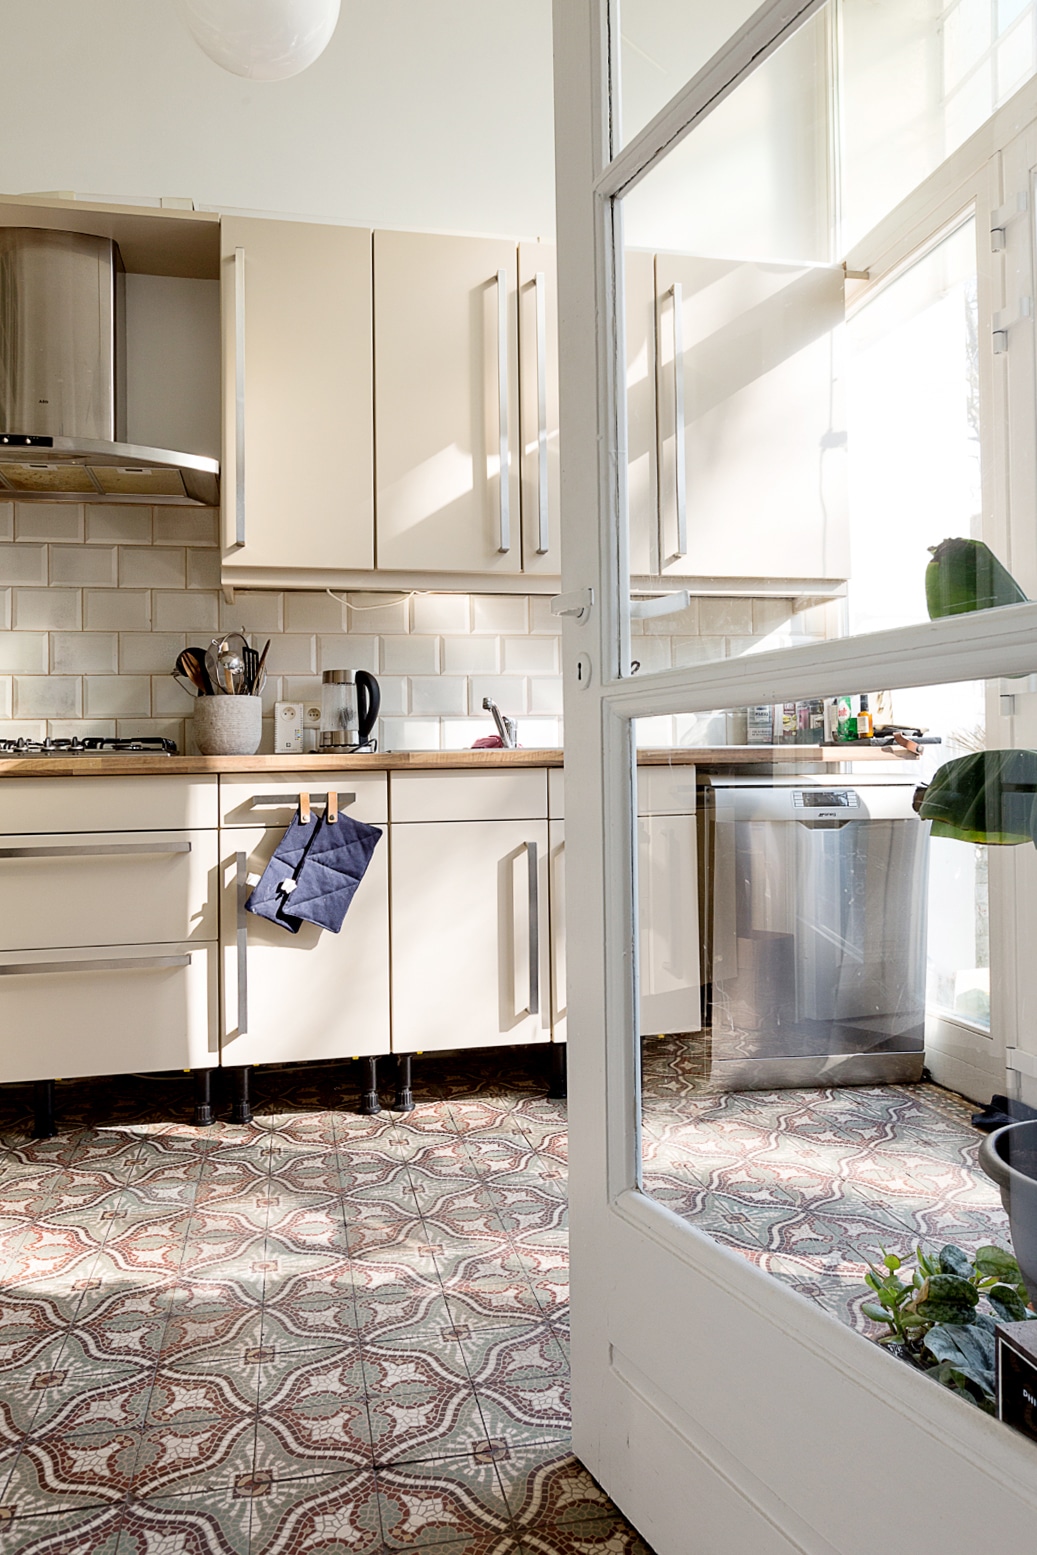 cream kitchen with gorgeous tile floors | bohemian house tour on coco kelley